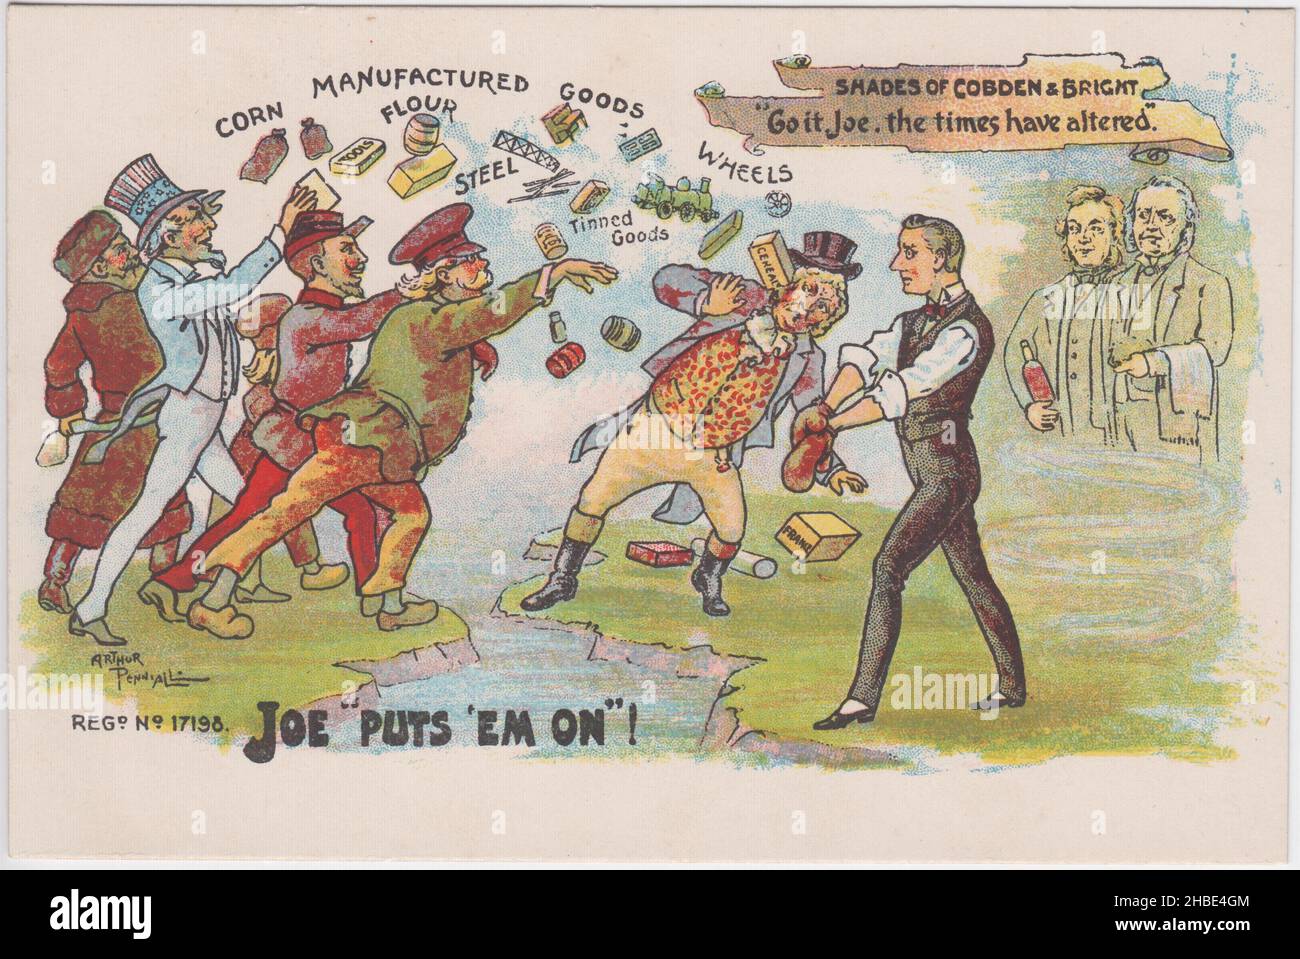 « Joe « met » « em on » ! » : caricature montrant Joseph Chamberlain debout dans une posture de boxe pour défendre John Bull (symbolisant la Grande-Bretagne) comme caricatures représentant la Russie, les États-Unis d'Amérique, la France et l'Allemagne, qui fait entrer au Royaume-Uni des marchandises (y compris du maïs, de la farine, de l'acier, des conserves et des roues). Les fantômes des politiciens libéraux radicaux en faveur du libre-échange Richard Cobden et John Bright se montrent favorables. Carte postale du début du 20th siècle sur la réforme protarifaire / le protectionnisme par Arthur Pennal, publié par Tamesis Photographic Syndicate, Londres Banque D'Images